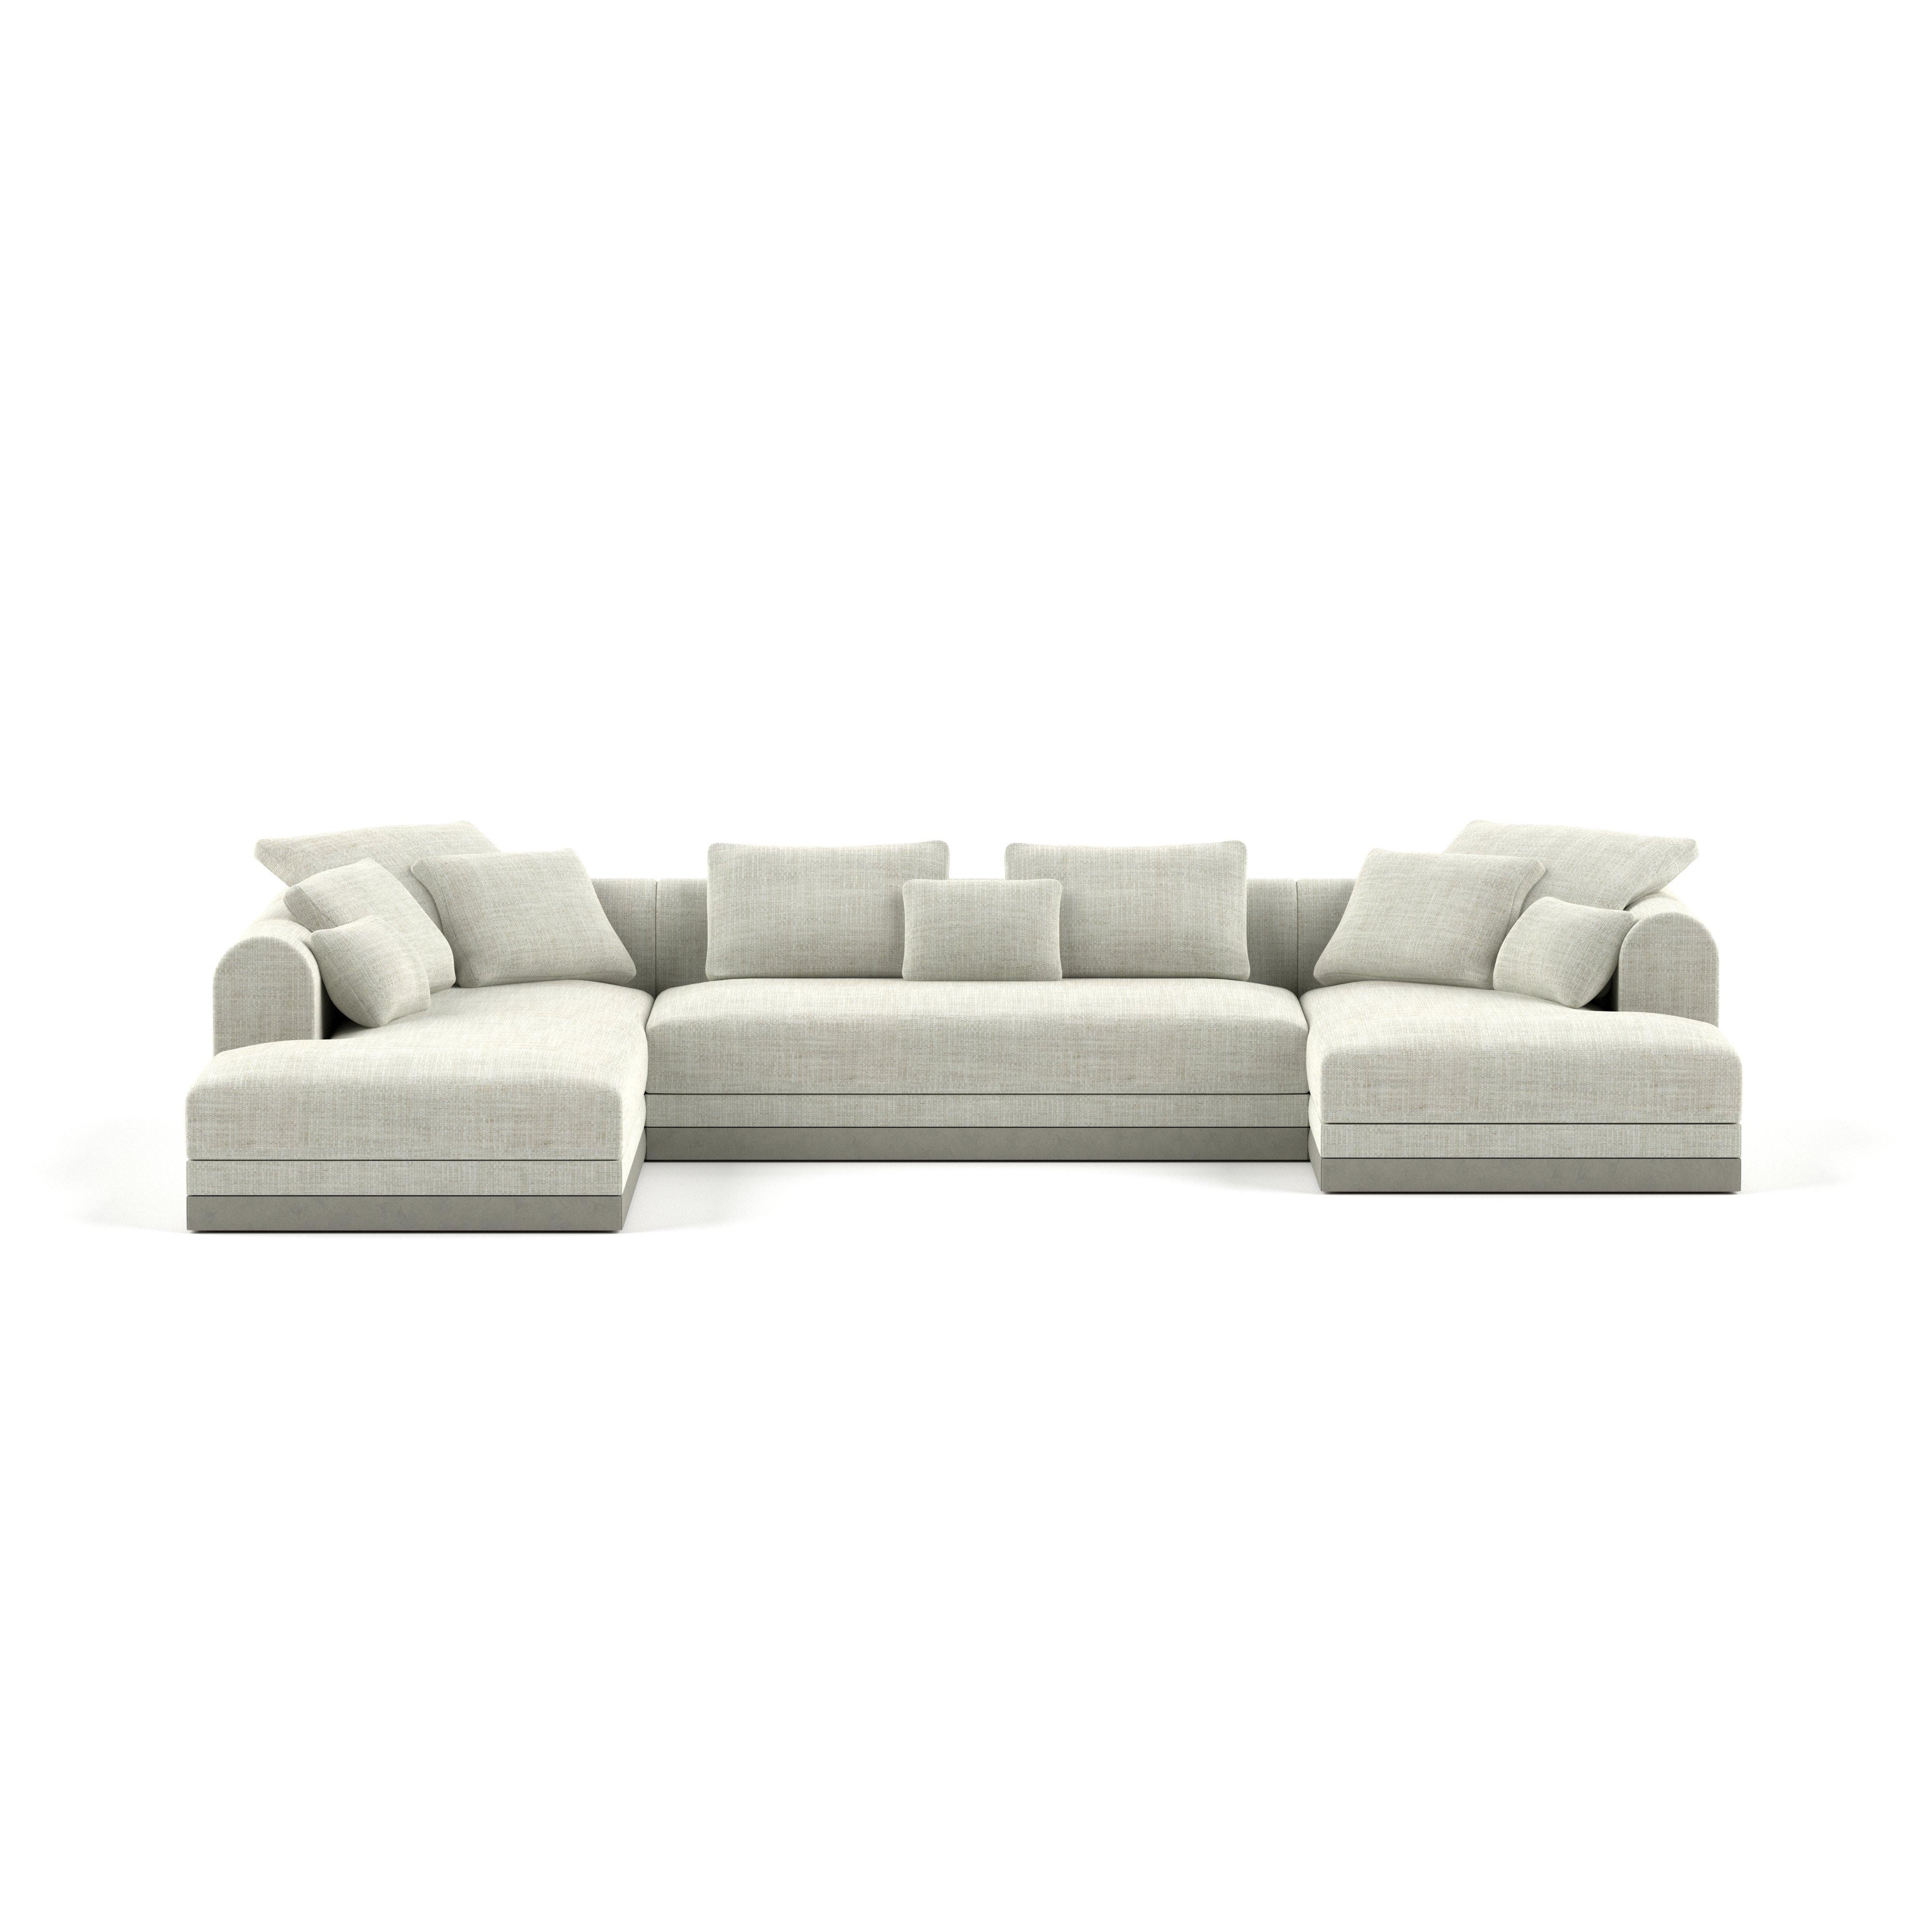 'Aqueduct' Contemporary Sofa by Poiat, Setup 4, Fox 02, High Plinth For Sale 3